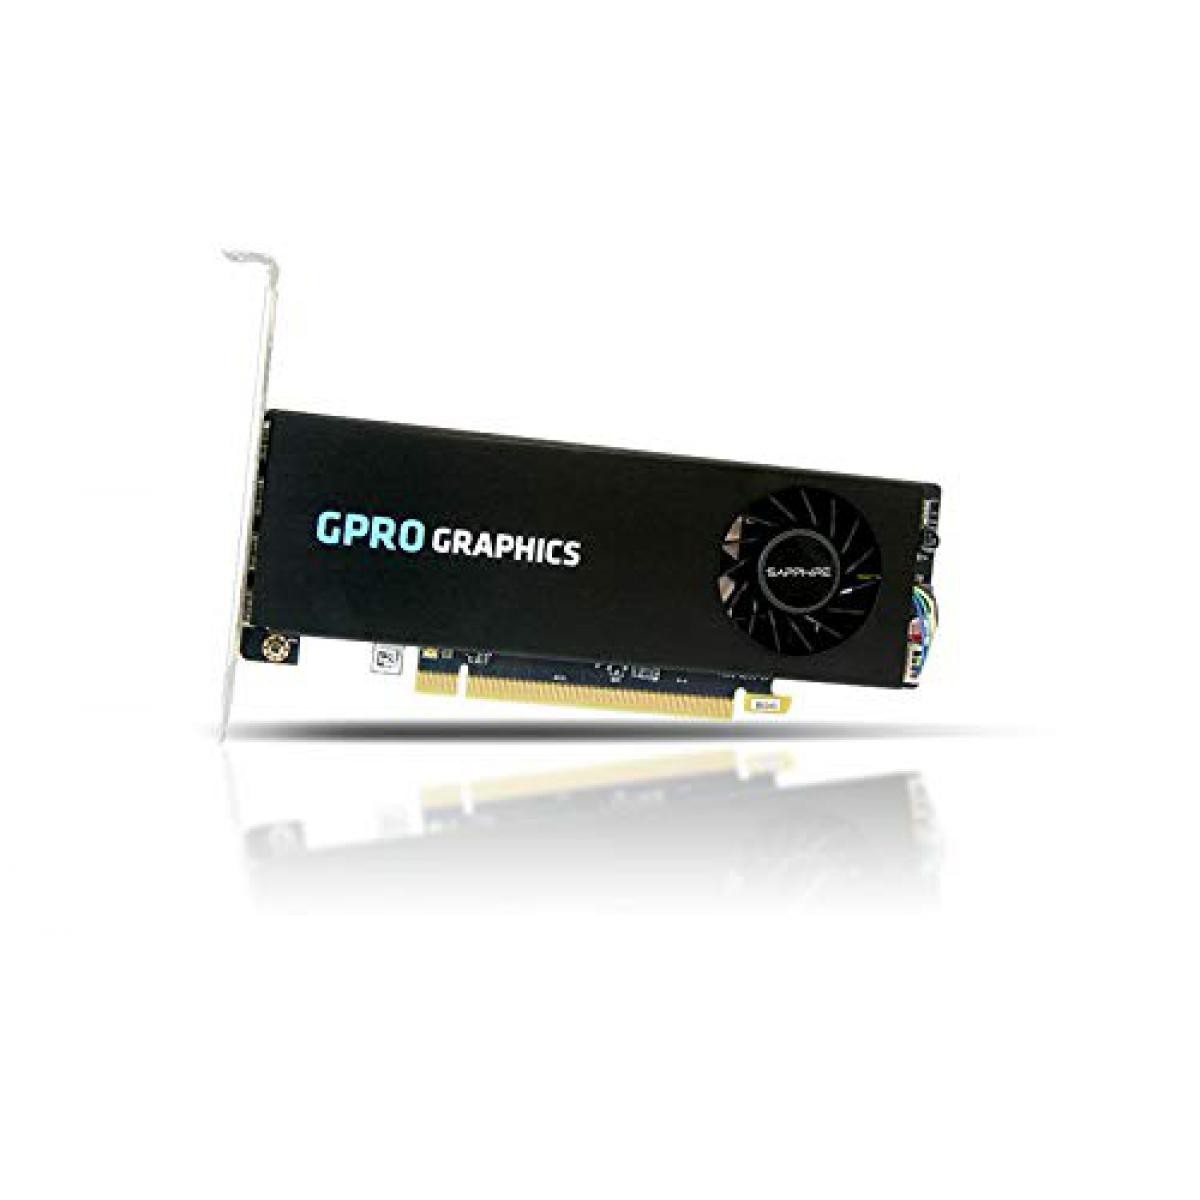 Sapphire SAPPHIRE GPRO 4200 4G GDDR5 PCI-E